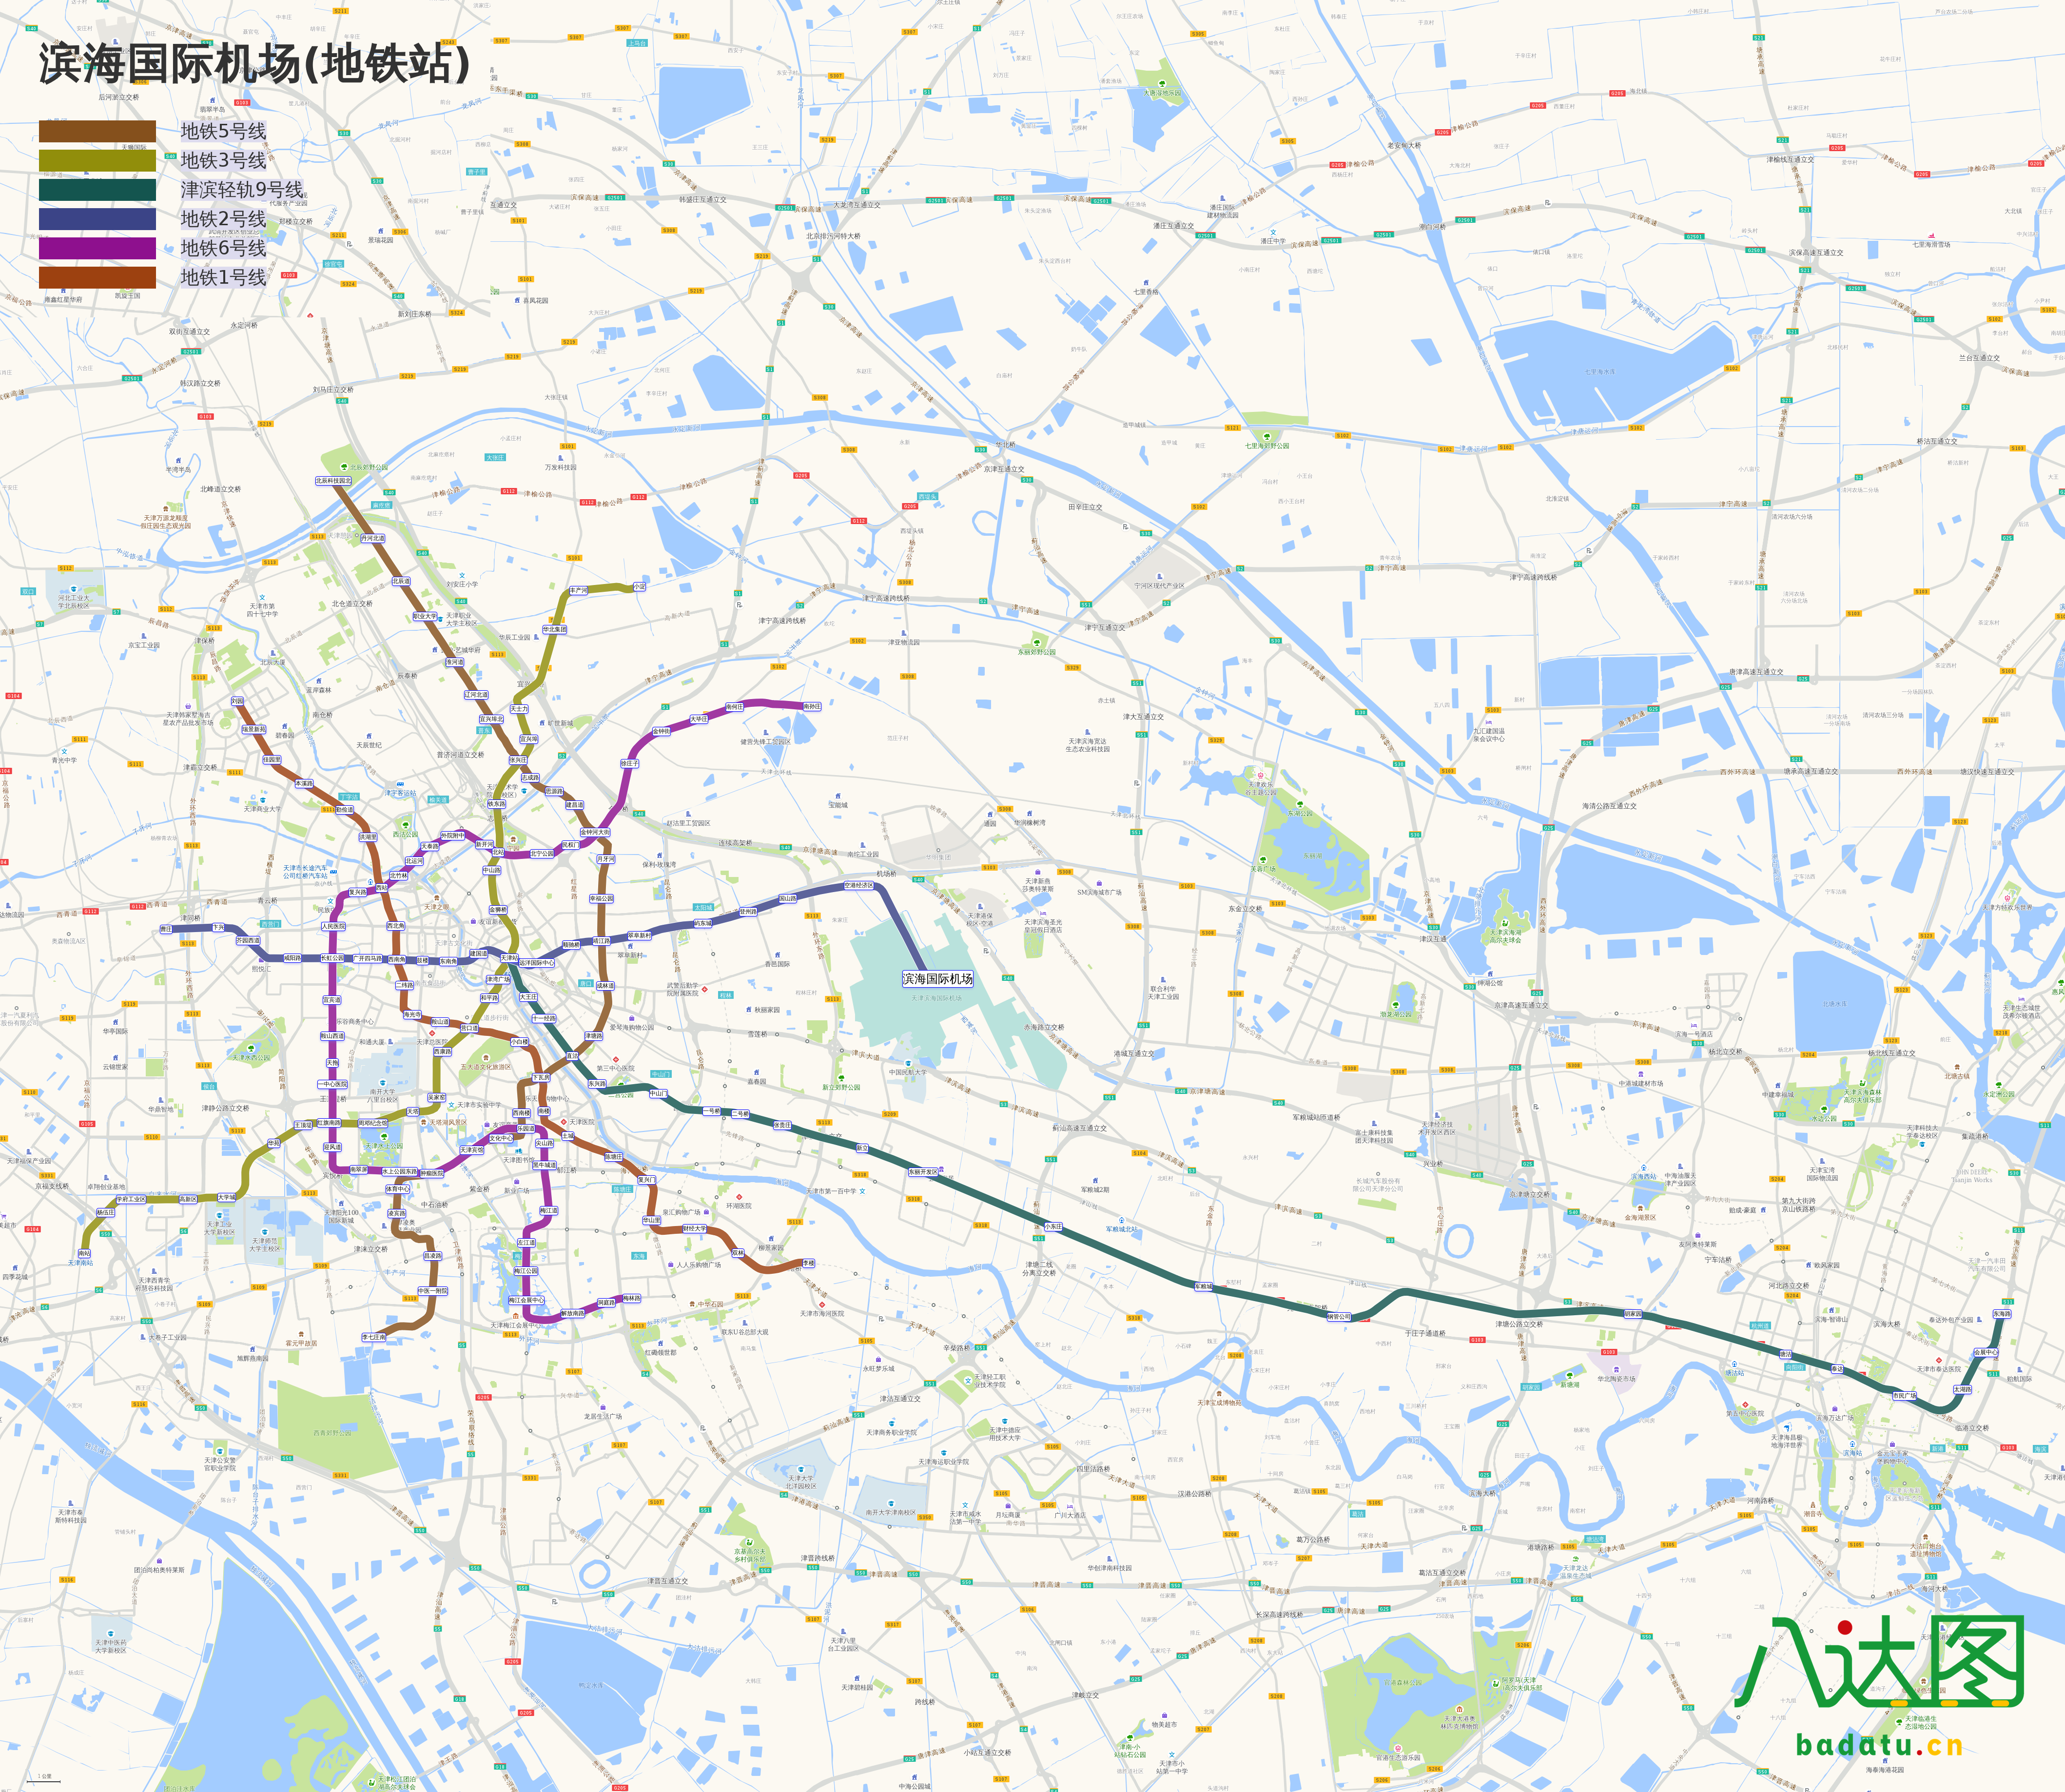 天津地铁线路图(2019年春季版)